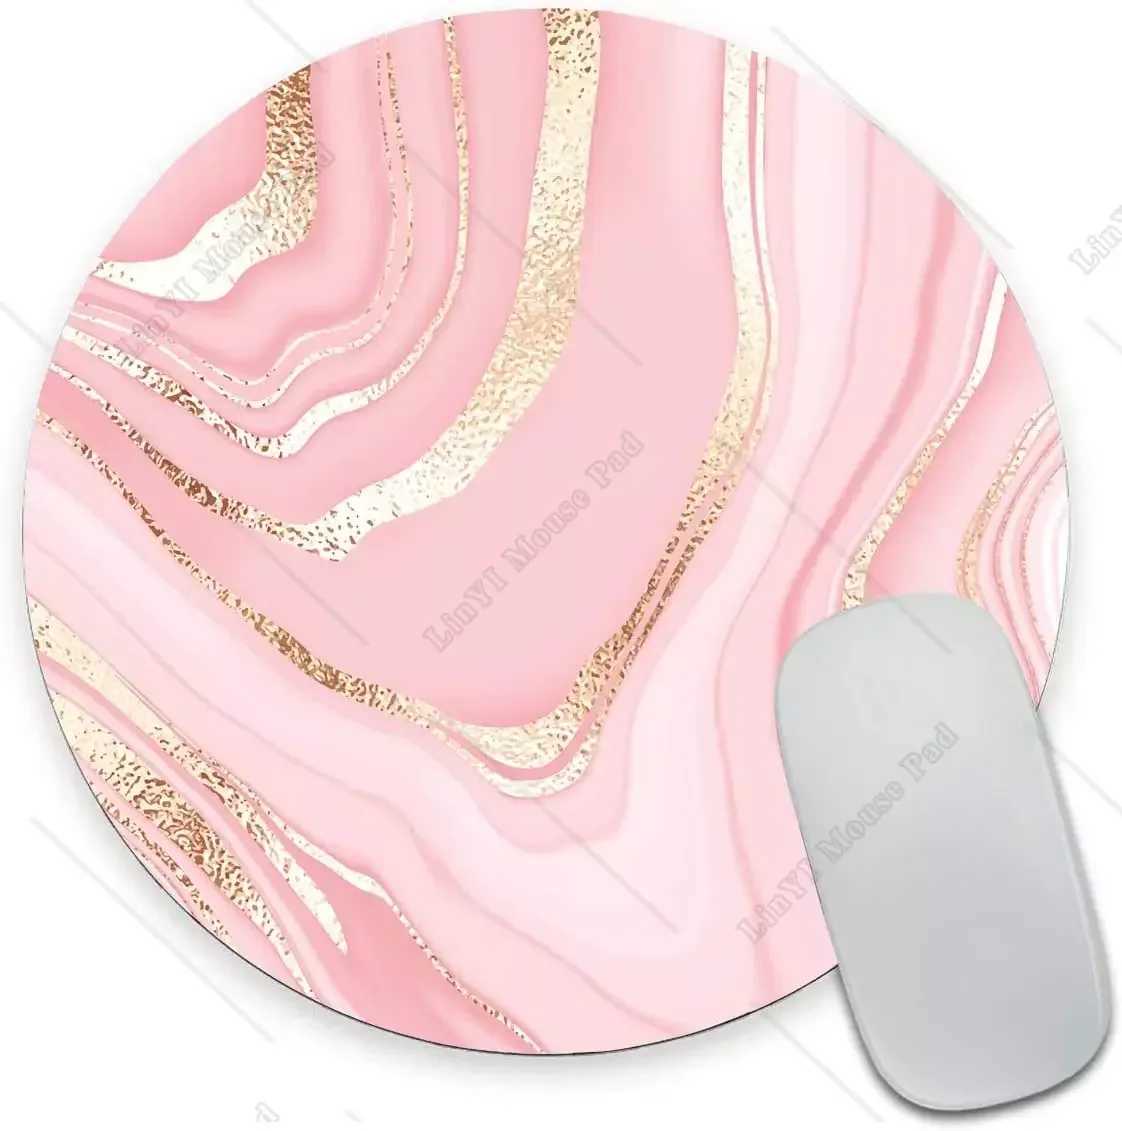 Mouse almofadas pulseira repousa redonda rosa de mármore dourado mouse bloco premium texturizado pequeno tape